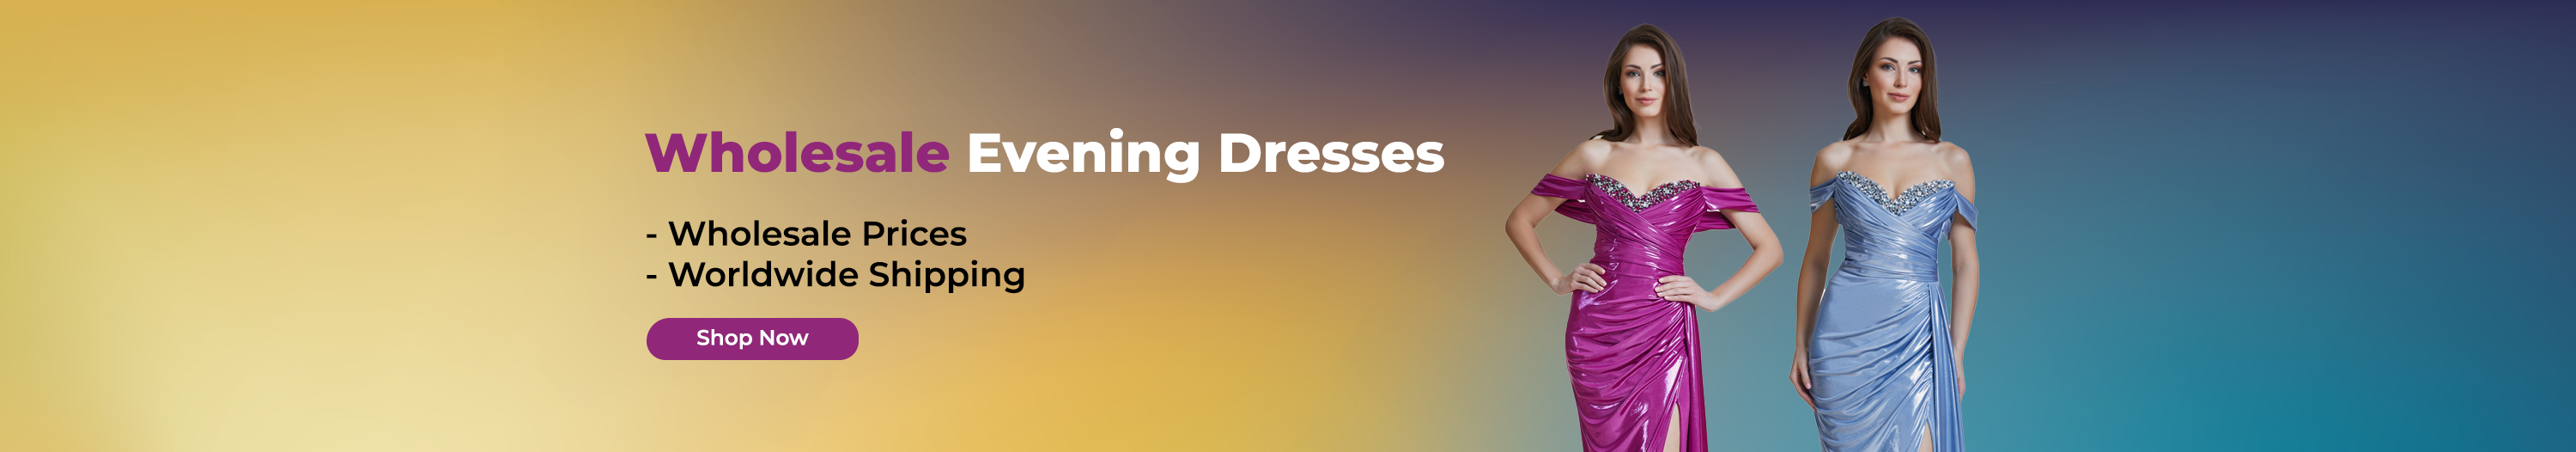 Wholesale Evening Dresses